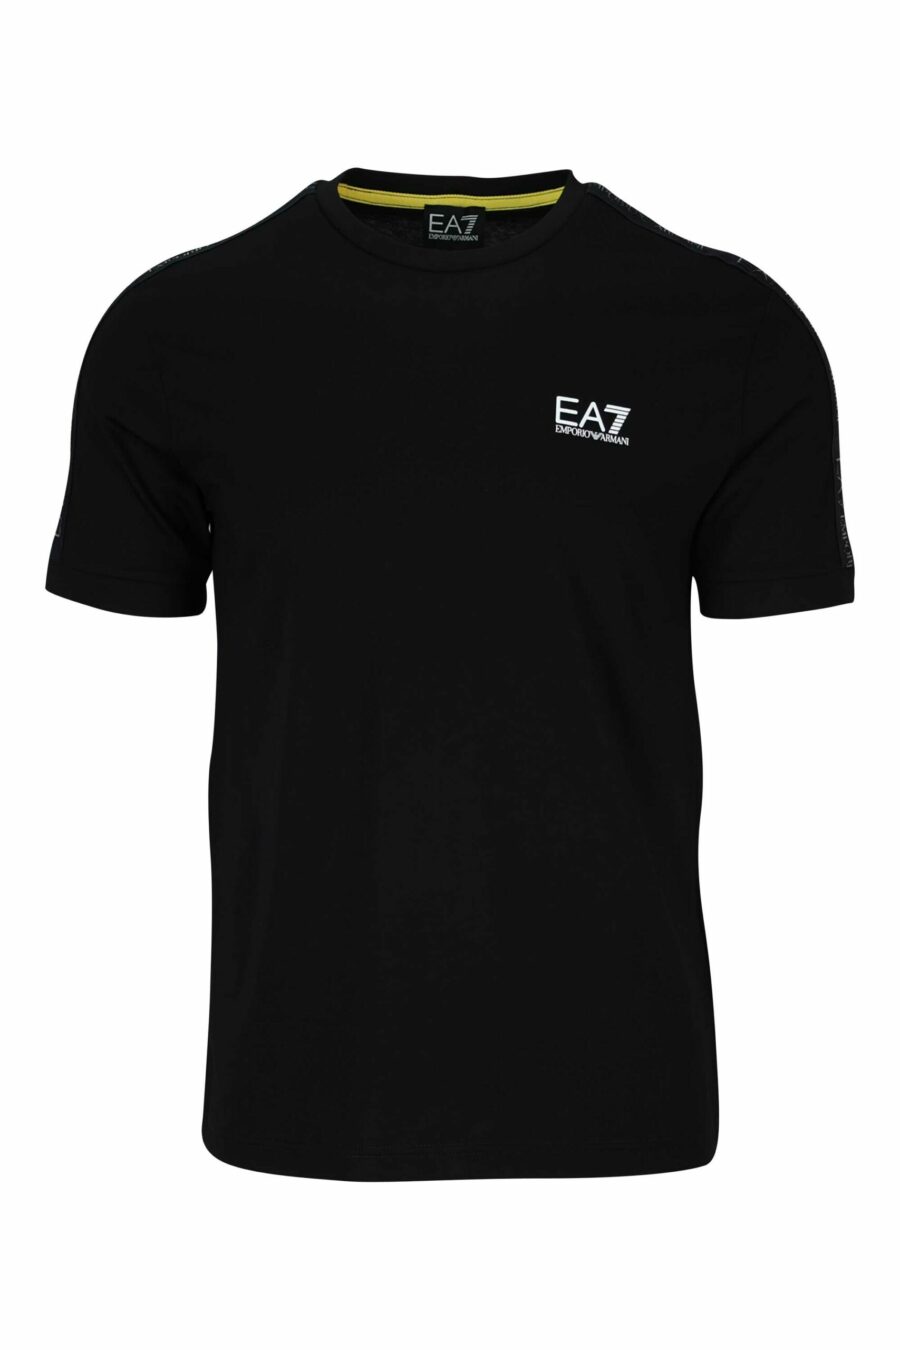 T-Shirt schwarz mit schwarzem "lux identity" Mini-Logo-Band - 8058947490189 skaliert